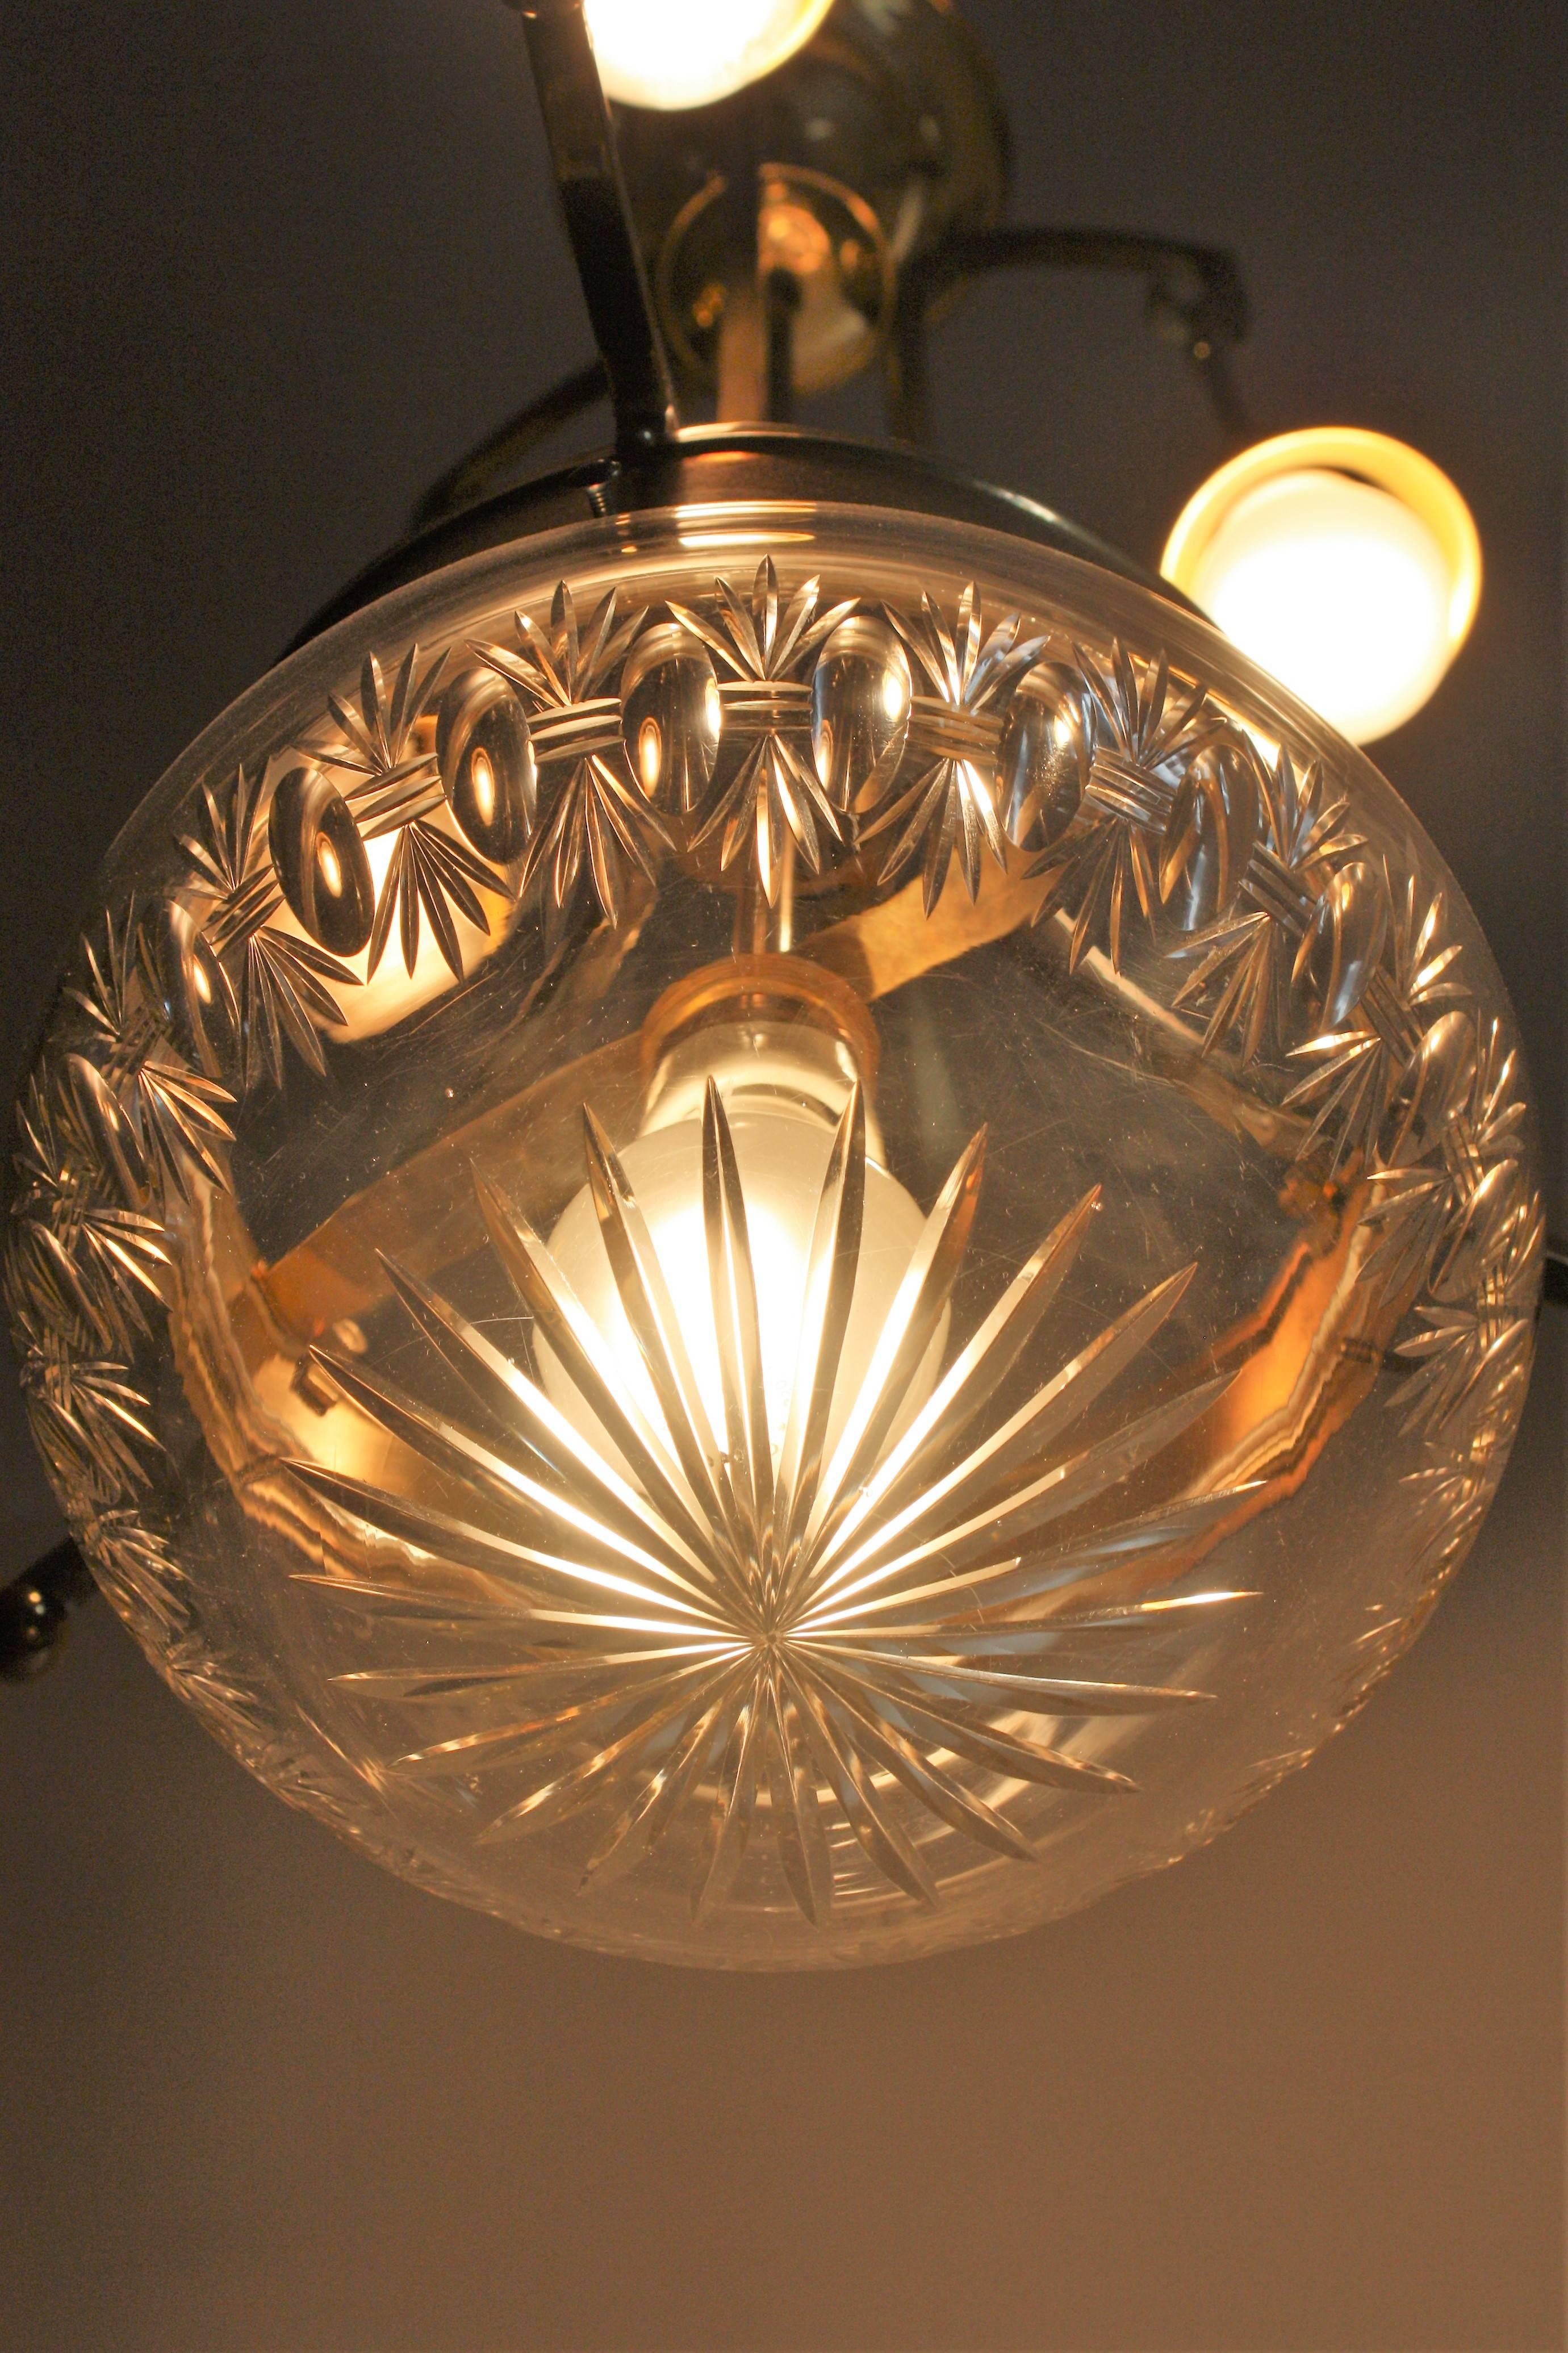 Art Nouveau Chandelier Brass and Crystal, circa 1900s (Österreichisch)